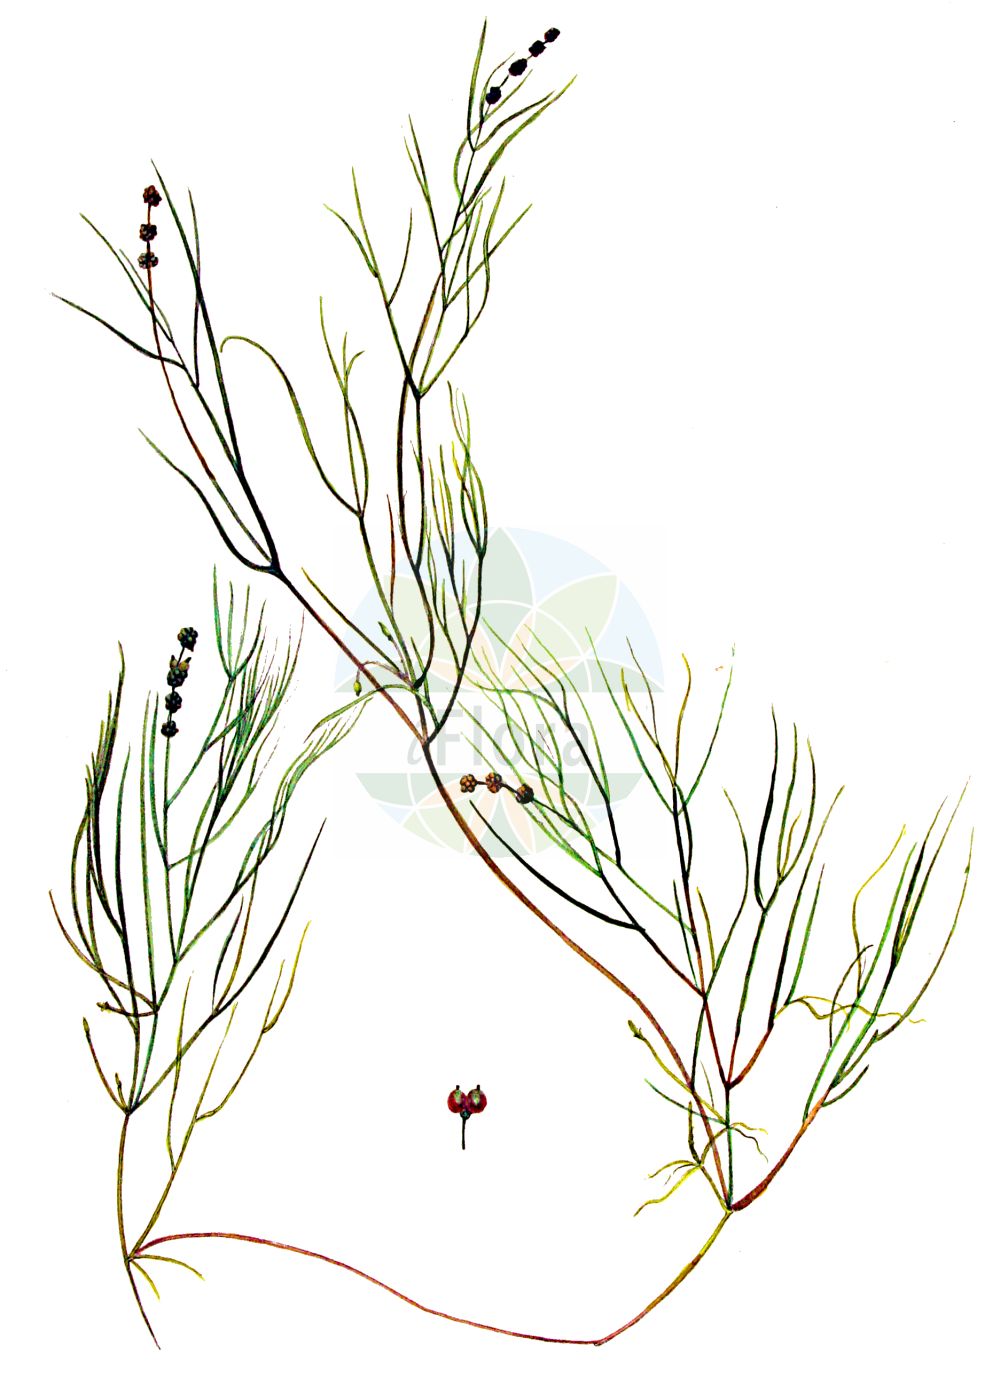 Historische Abbildung von Potamogeton pusillus (Zwerg-Laichkraut - Lesser Pondweed). Das Bild zeigt Blatt, Bluete, Frucht und Same. ---- Historical Drawing of Potamogeton pusillus (Zwerg-Laichkraut - Lesser Pondweed). The image is showing leaf, flower, fruit and seed.(Potamogeton pusillus,Zwerg-Laichkraut,Lesser Pondweed,Potamogeton gracilis,Potamogeton panormitanus,Potamogeton pusillus,Potamogeton skvortsovii,Zwerg-Laichkraut,Kleines Laichkraut,Lesser Pondweed,Slender Pondweed,Small Pondweed,Potamogeton,Laichkraut,Pondweed,Potamogetonaceae,Laichkrautgewächse,Pondweed family,Blatt,Bluete,Frucht,Same,leaf,flower,fruit,seed,Kops (1800-1934))